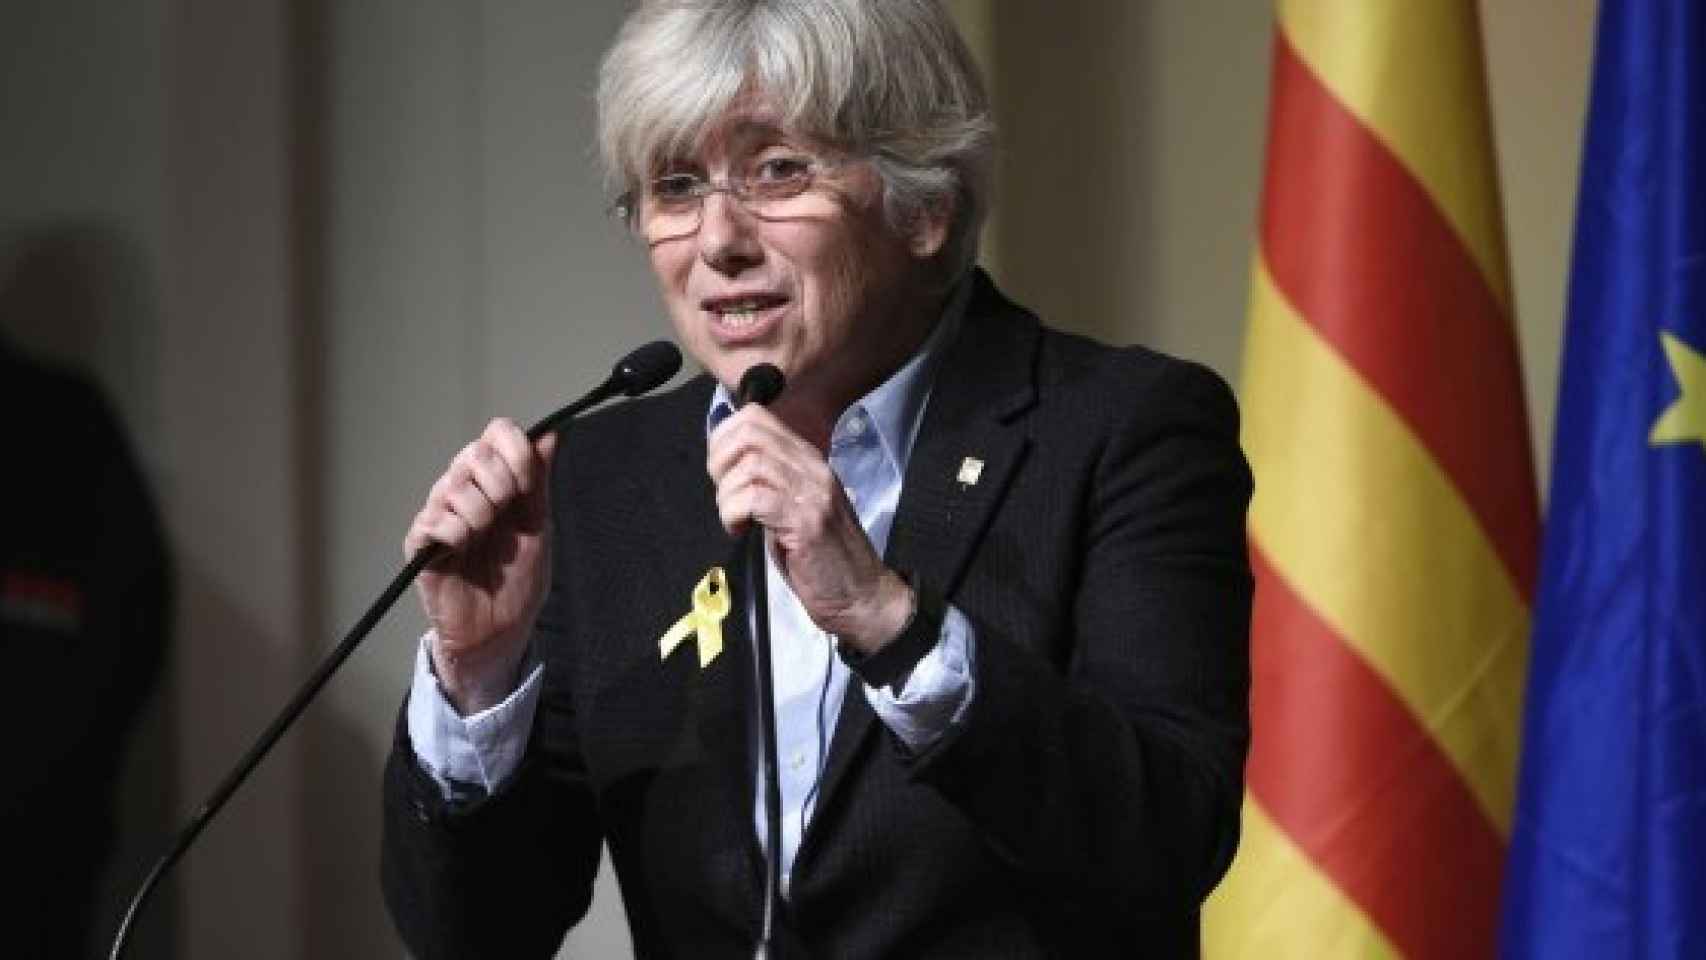 La ex-consellera Clara Ponsati quiere que le pagues sus gastos legales